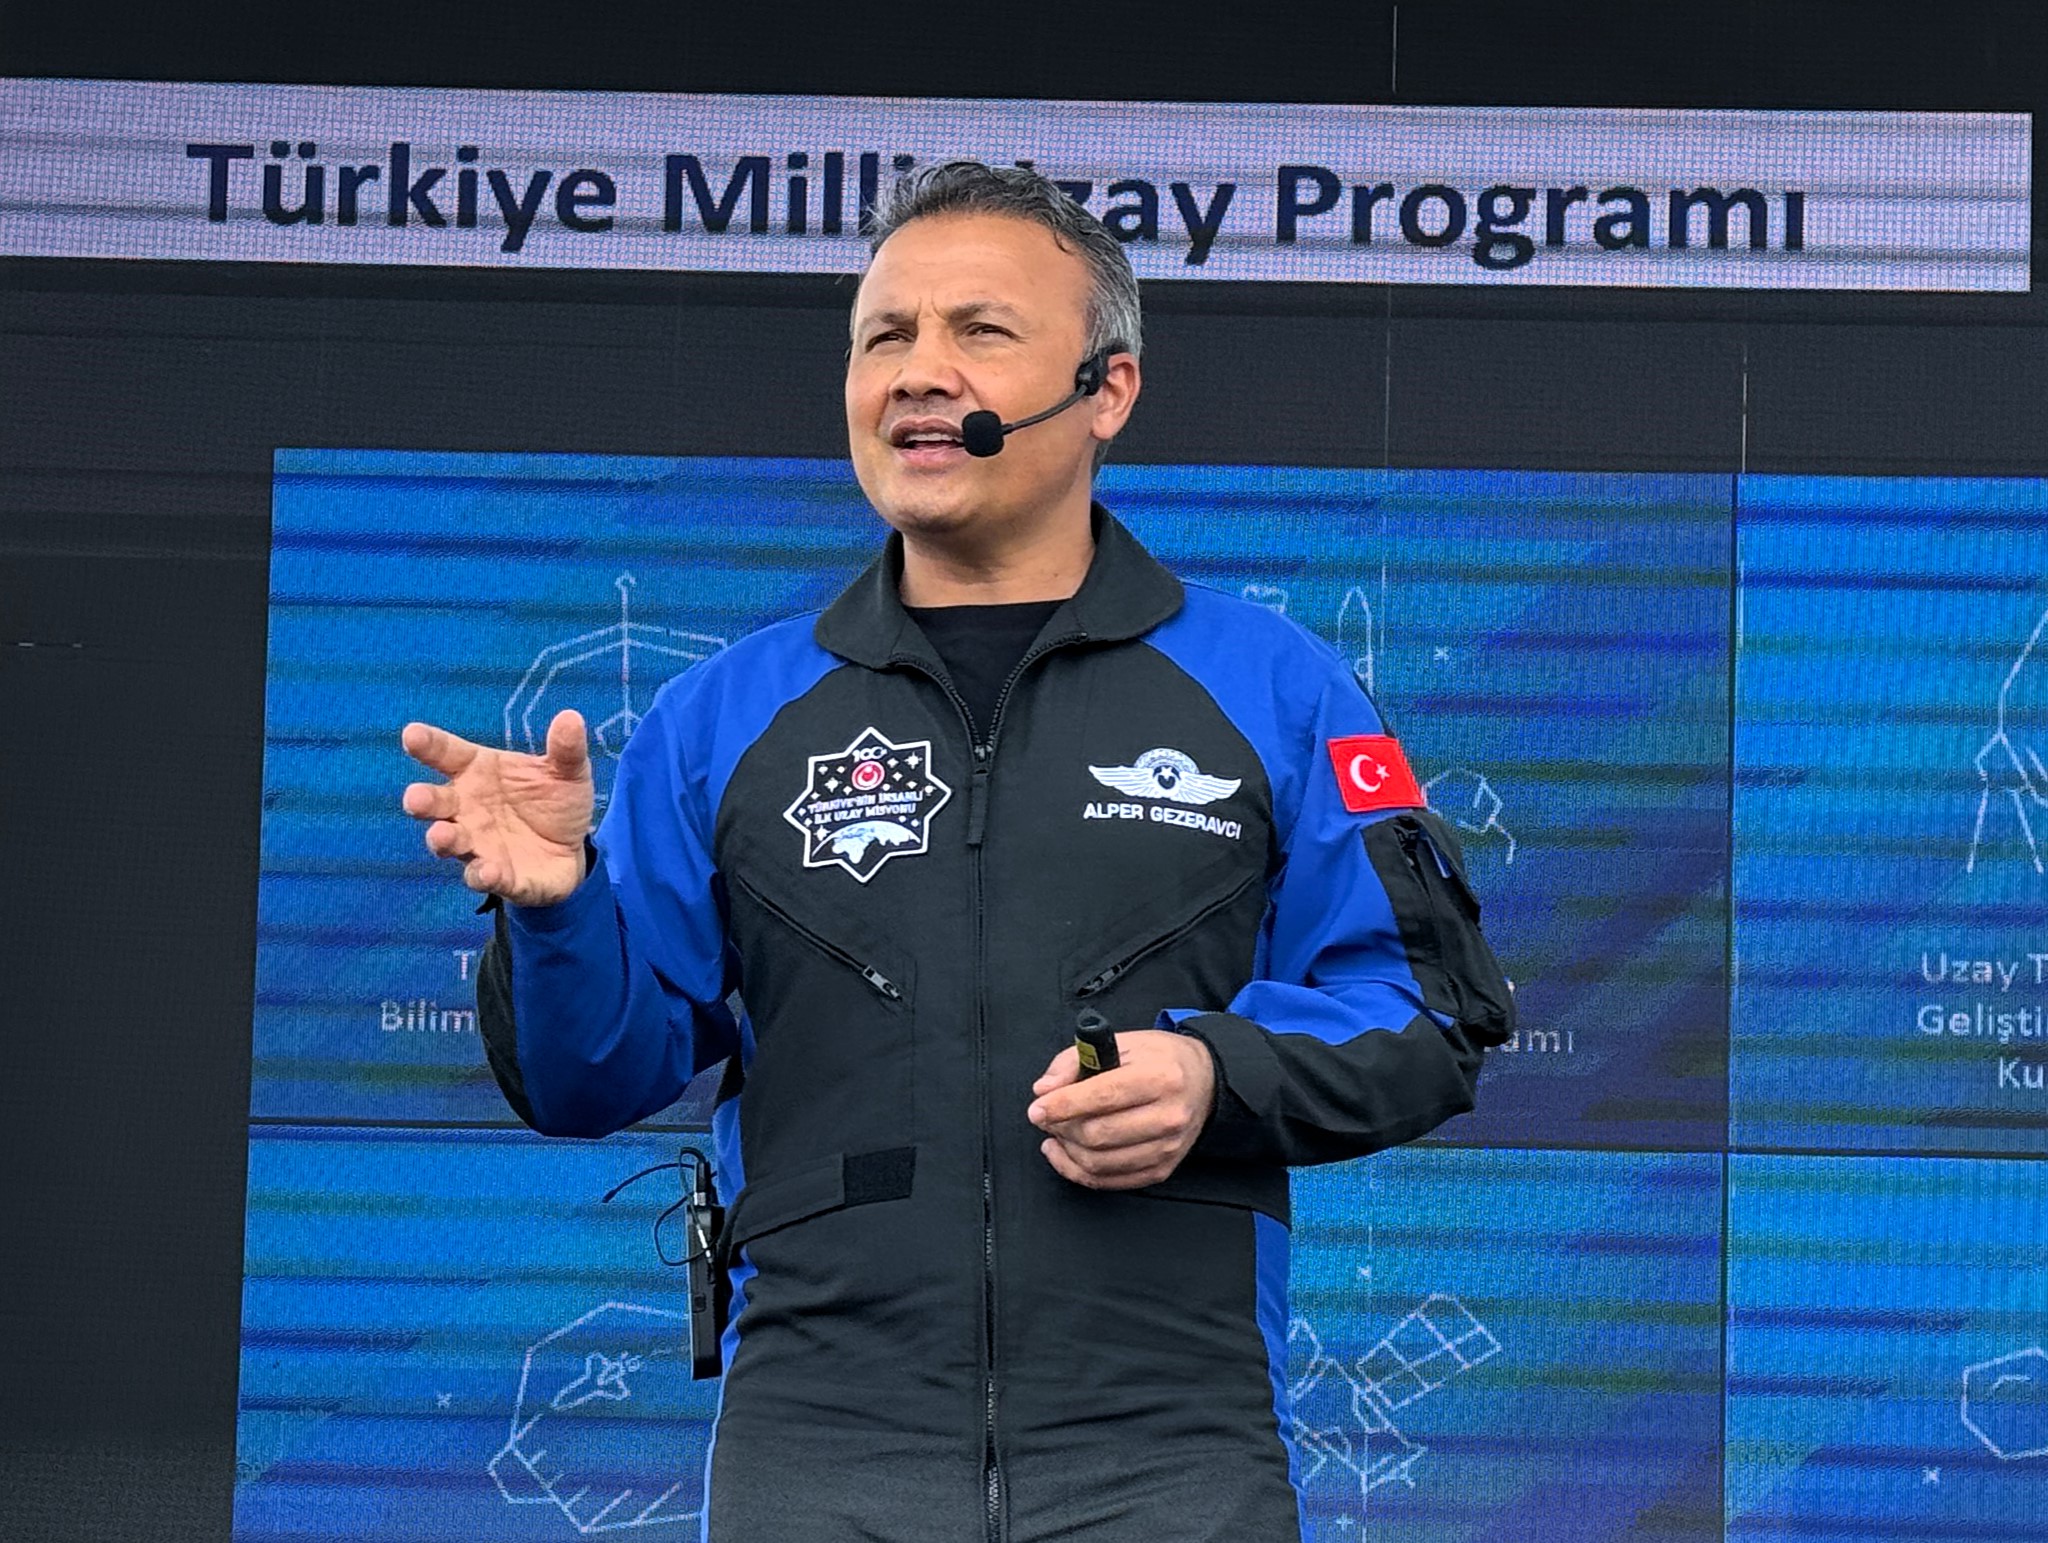 turkiyenin-ilk-astronotu-gezeravci-aksaray-bilim-festivalinde-konustu-gyeUaWnI.jpg